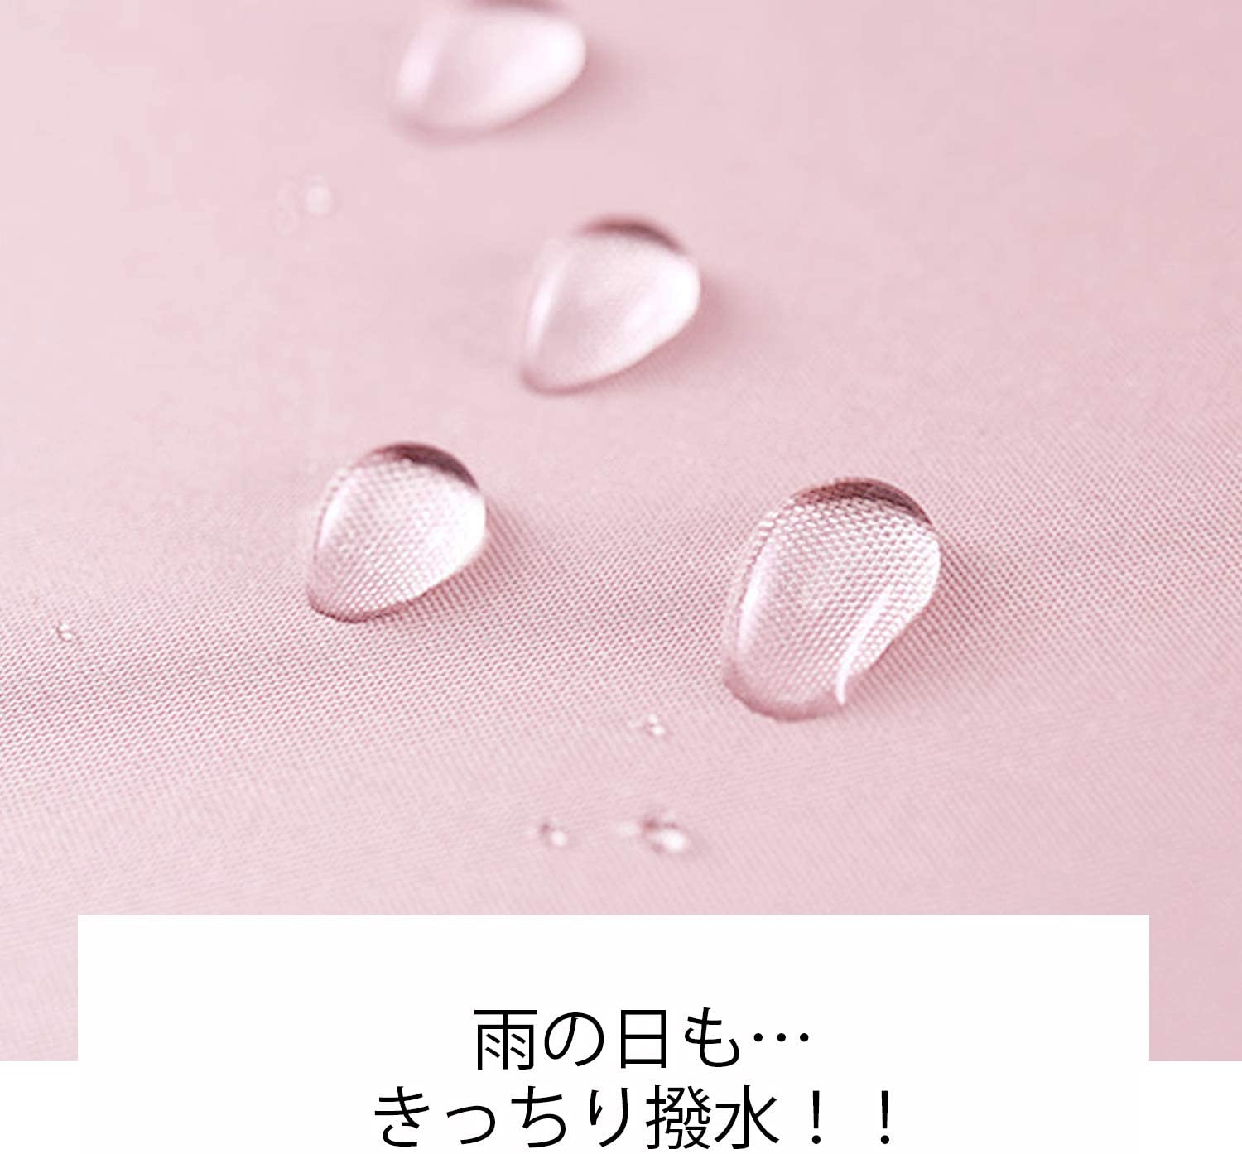 Adoric(アドリック) 晴雨兼用 折りたたみ傘の商品画像2 